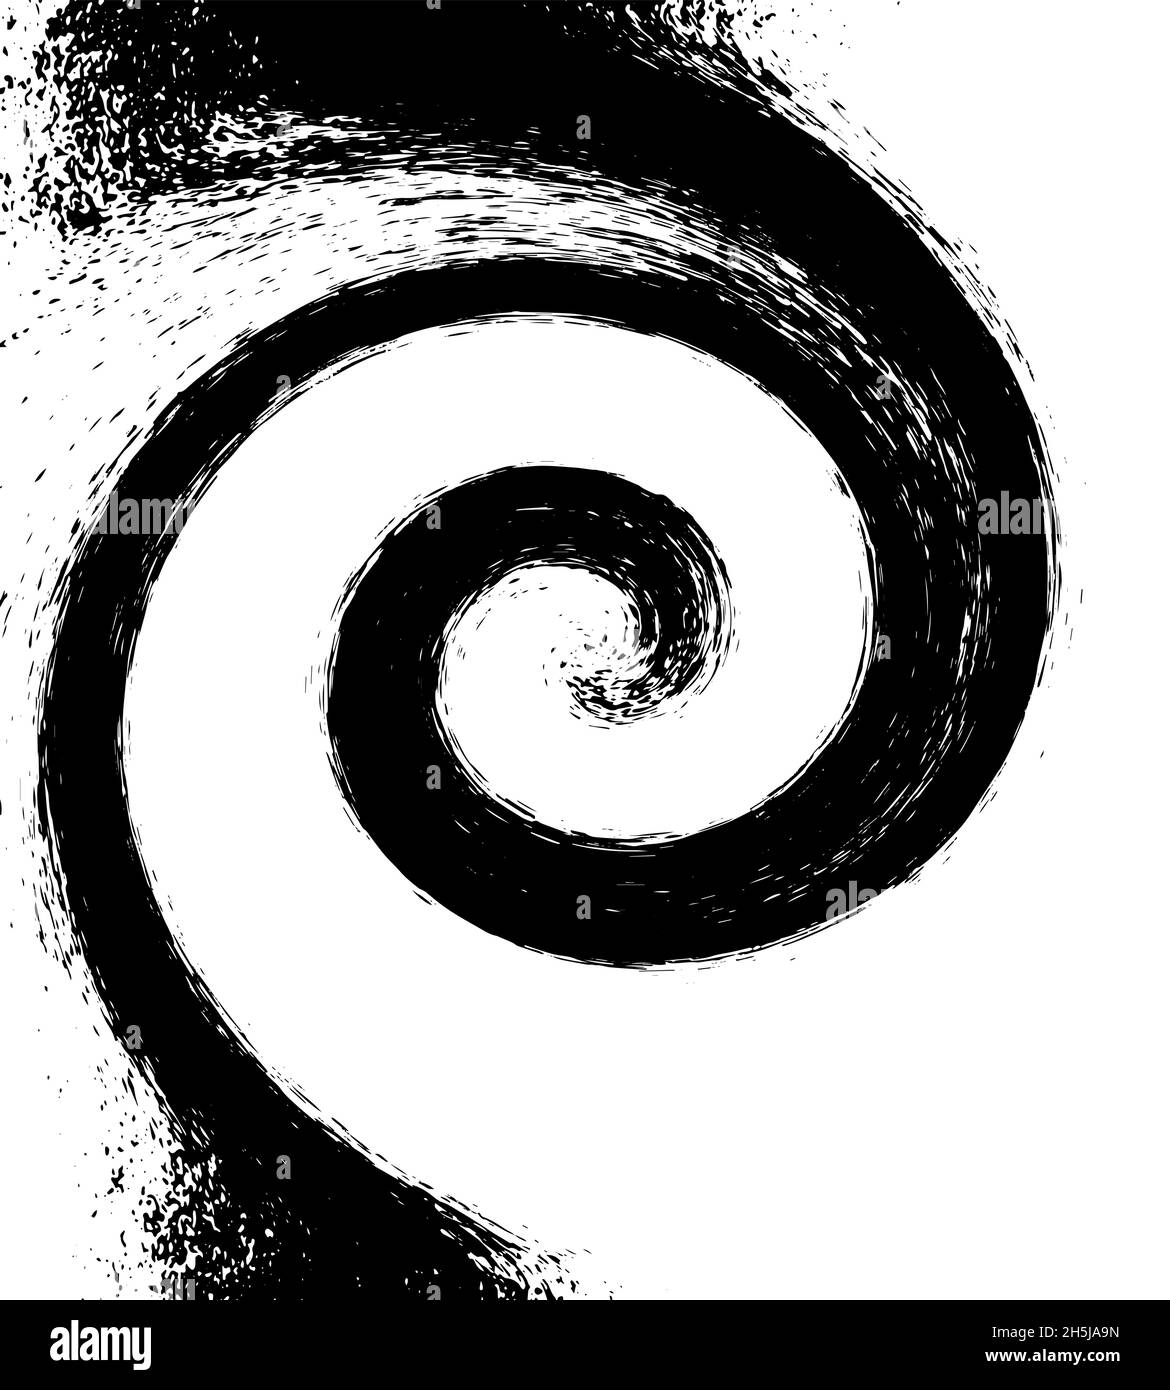 Sfondo a spirale di colore nero acquerello, vorticoso in un cerchio a spirale, isolato, sfondo bianco. Illustrazione vettoriale Illustrazione Vettoriale